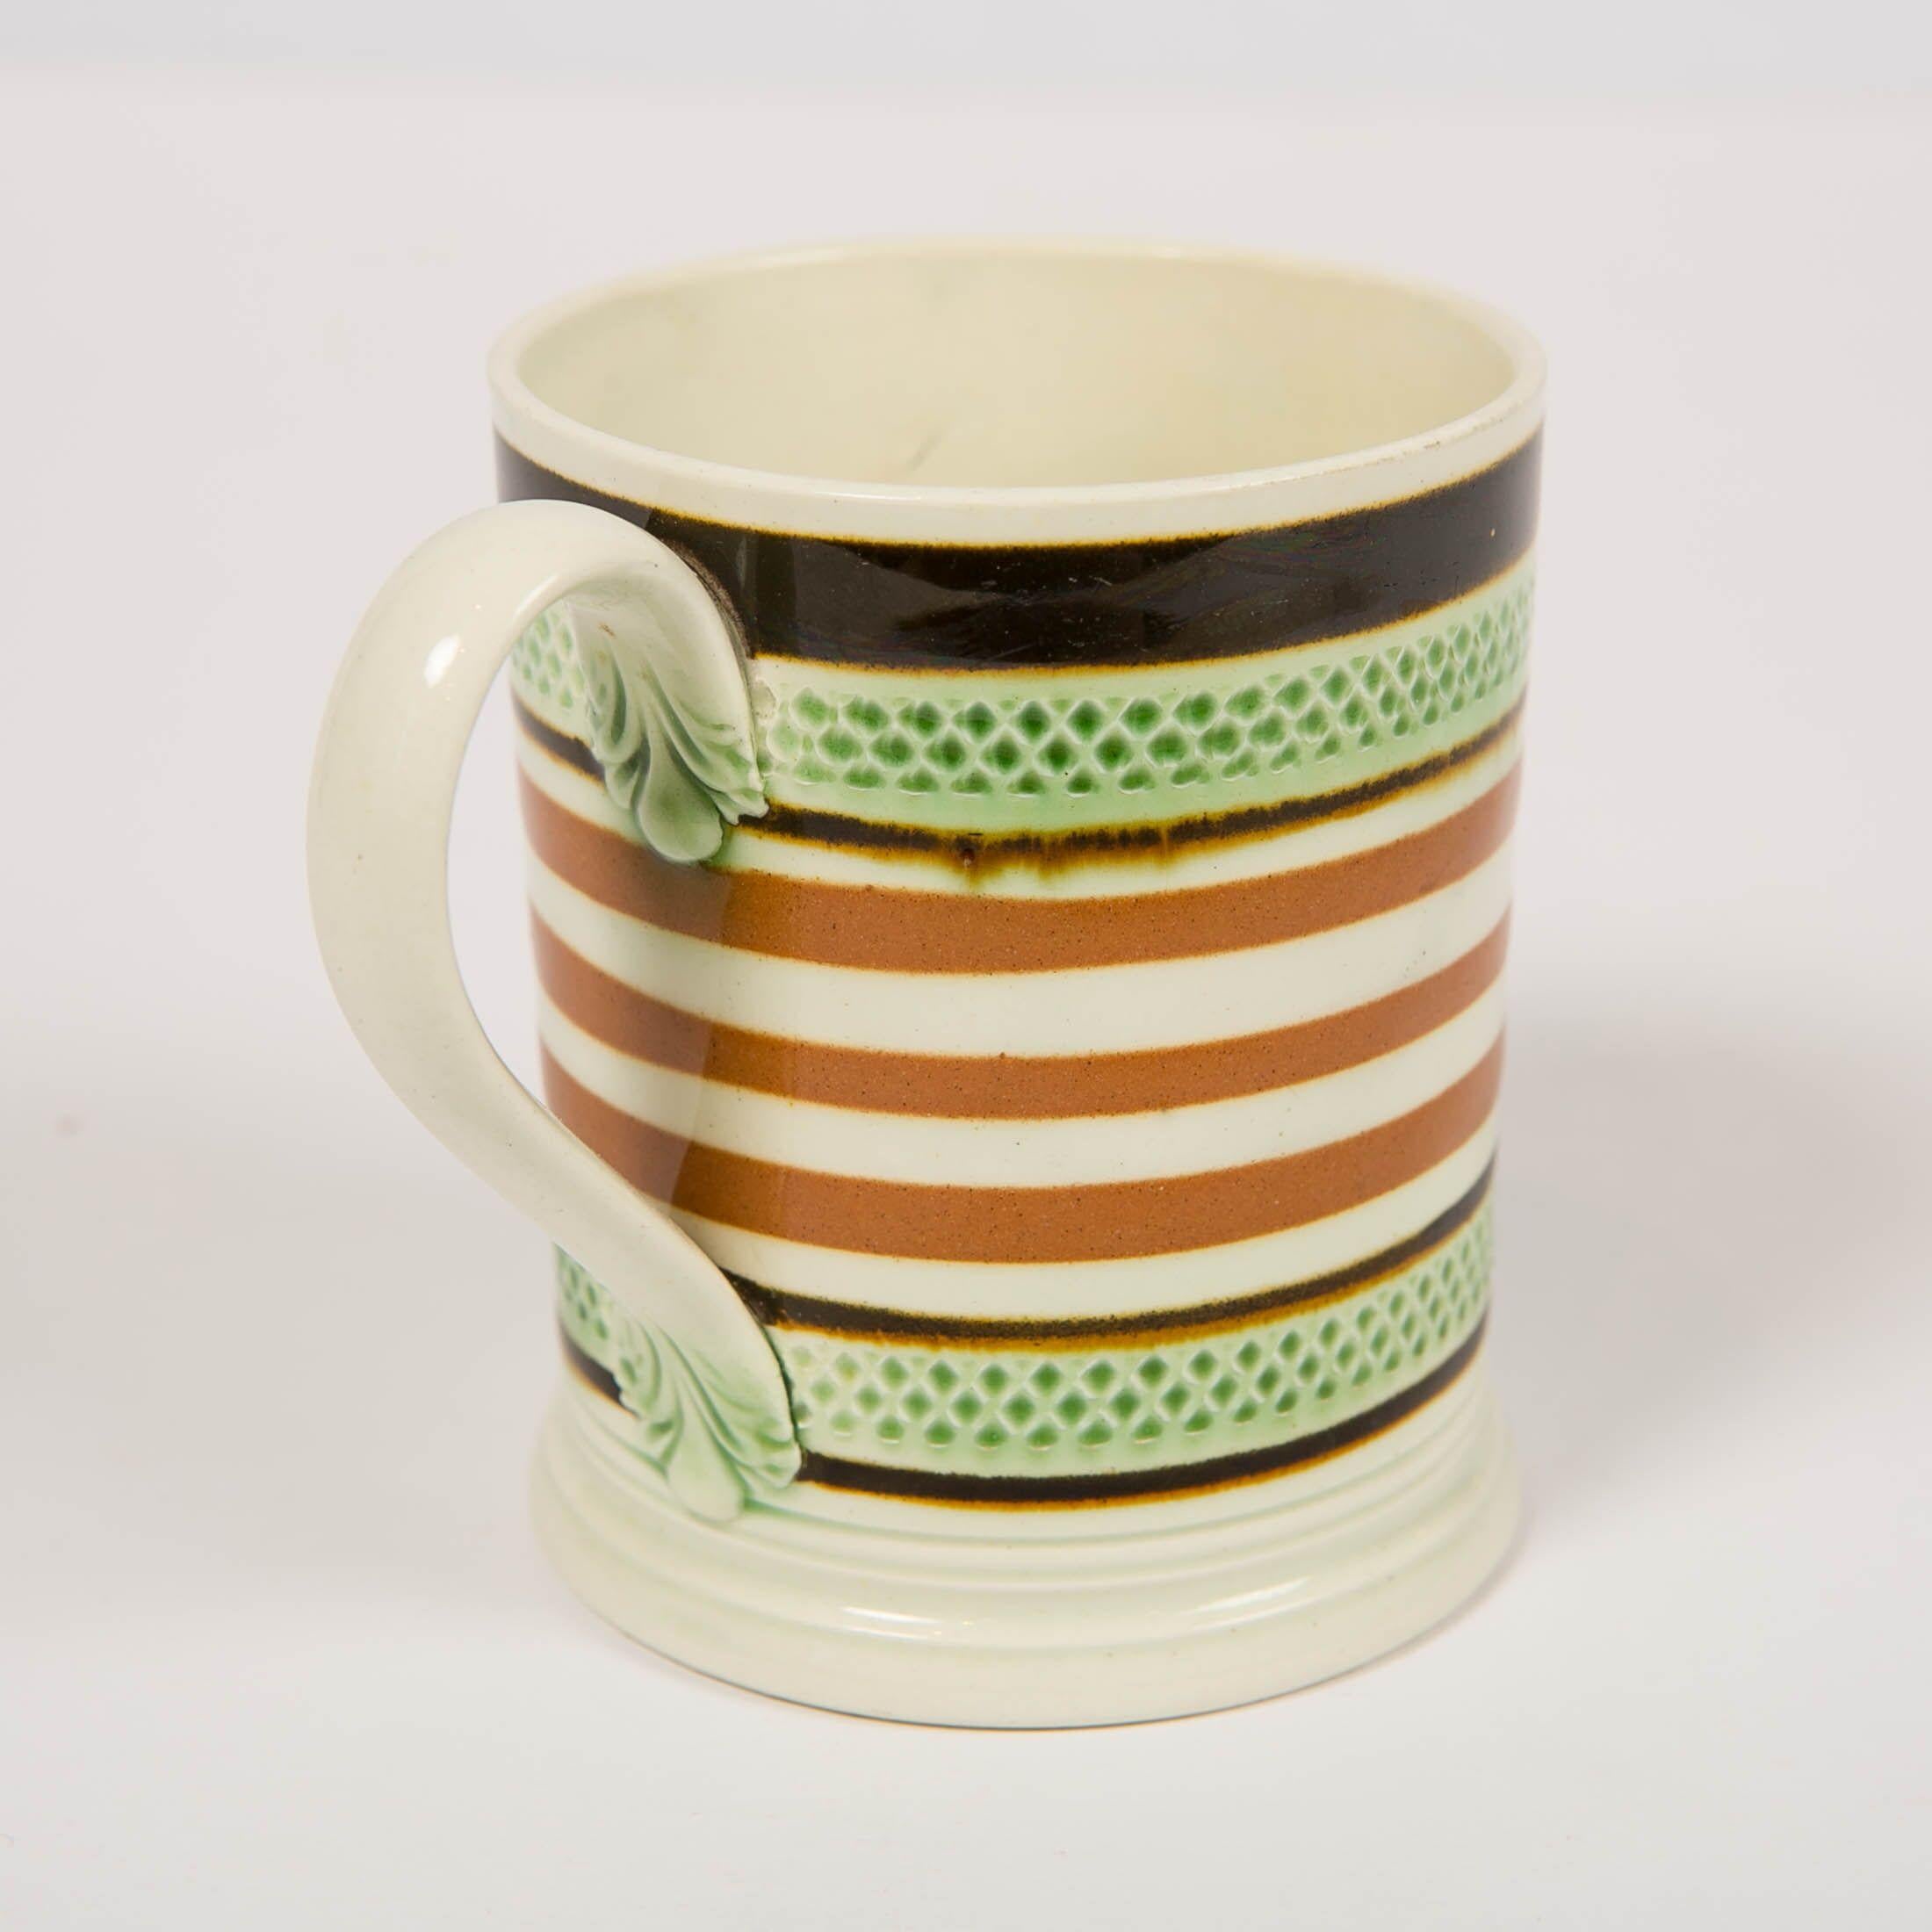 English Mochaware Mug Banded with Green Glaze and Brown Slip, England, circa 1810